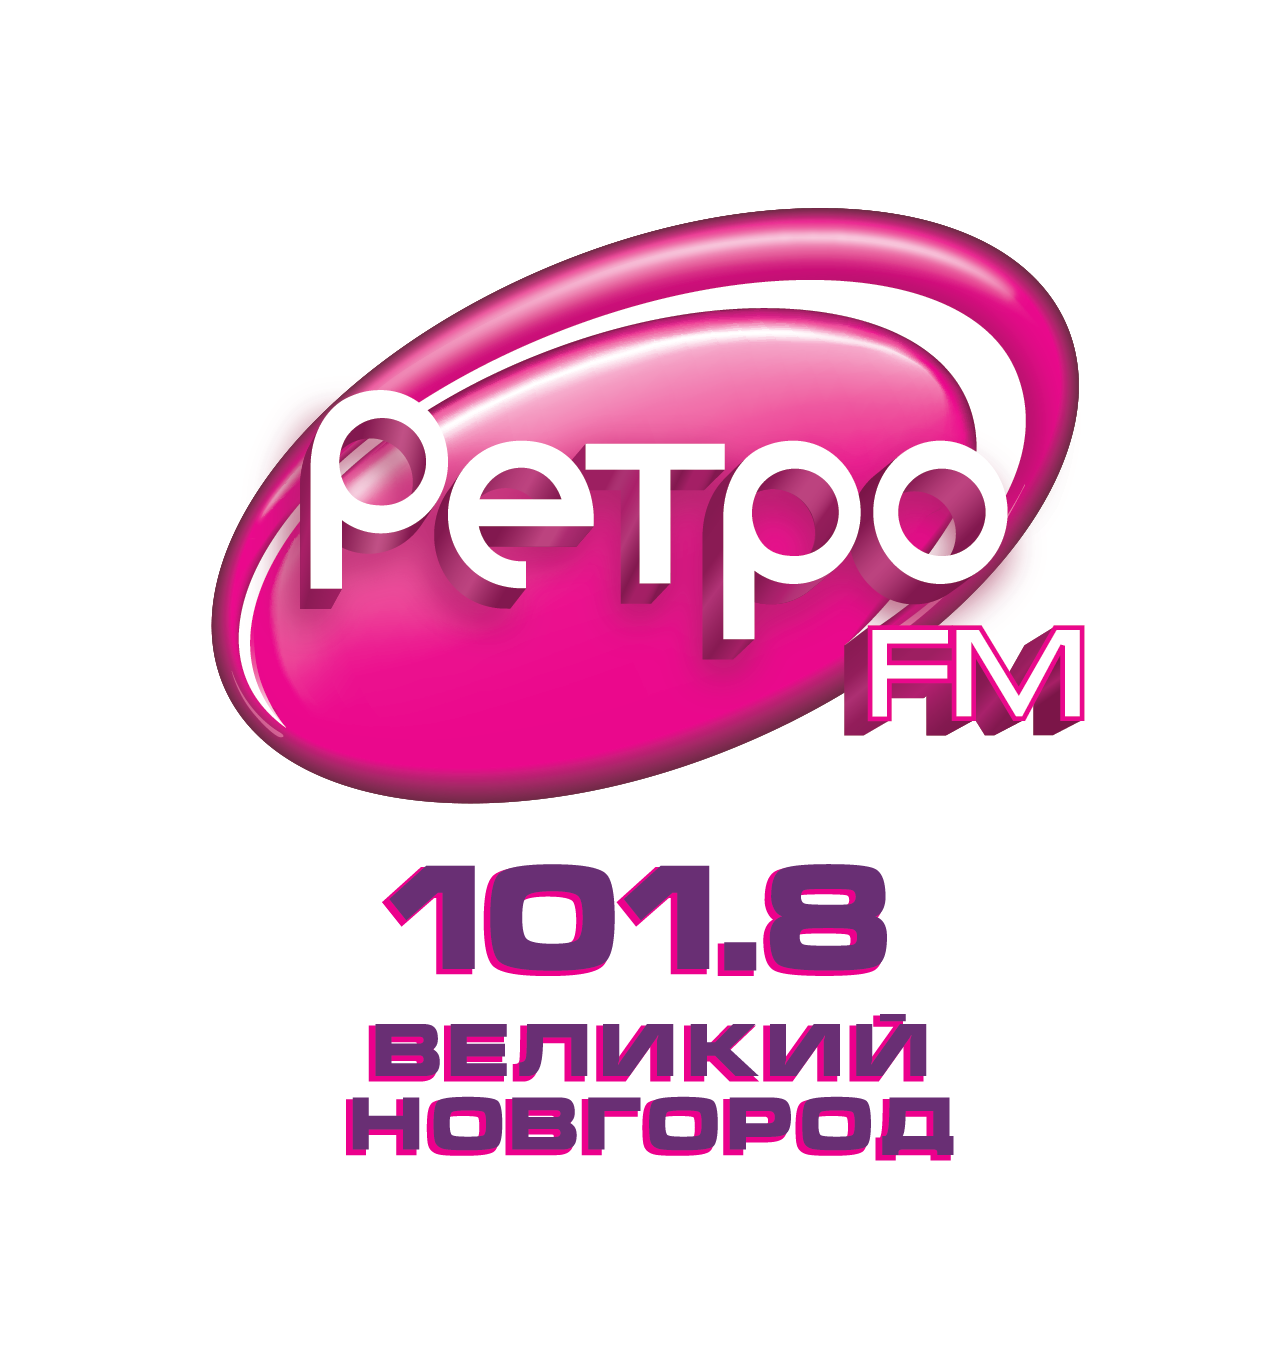 Логотип радиостанции ретро ФМ. Ретро fm лого. Лого радиостанции ретро. Ретро ФМ Смоленск.